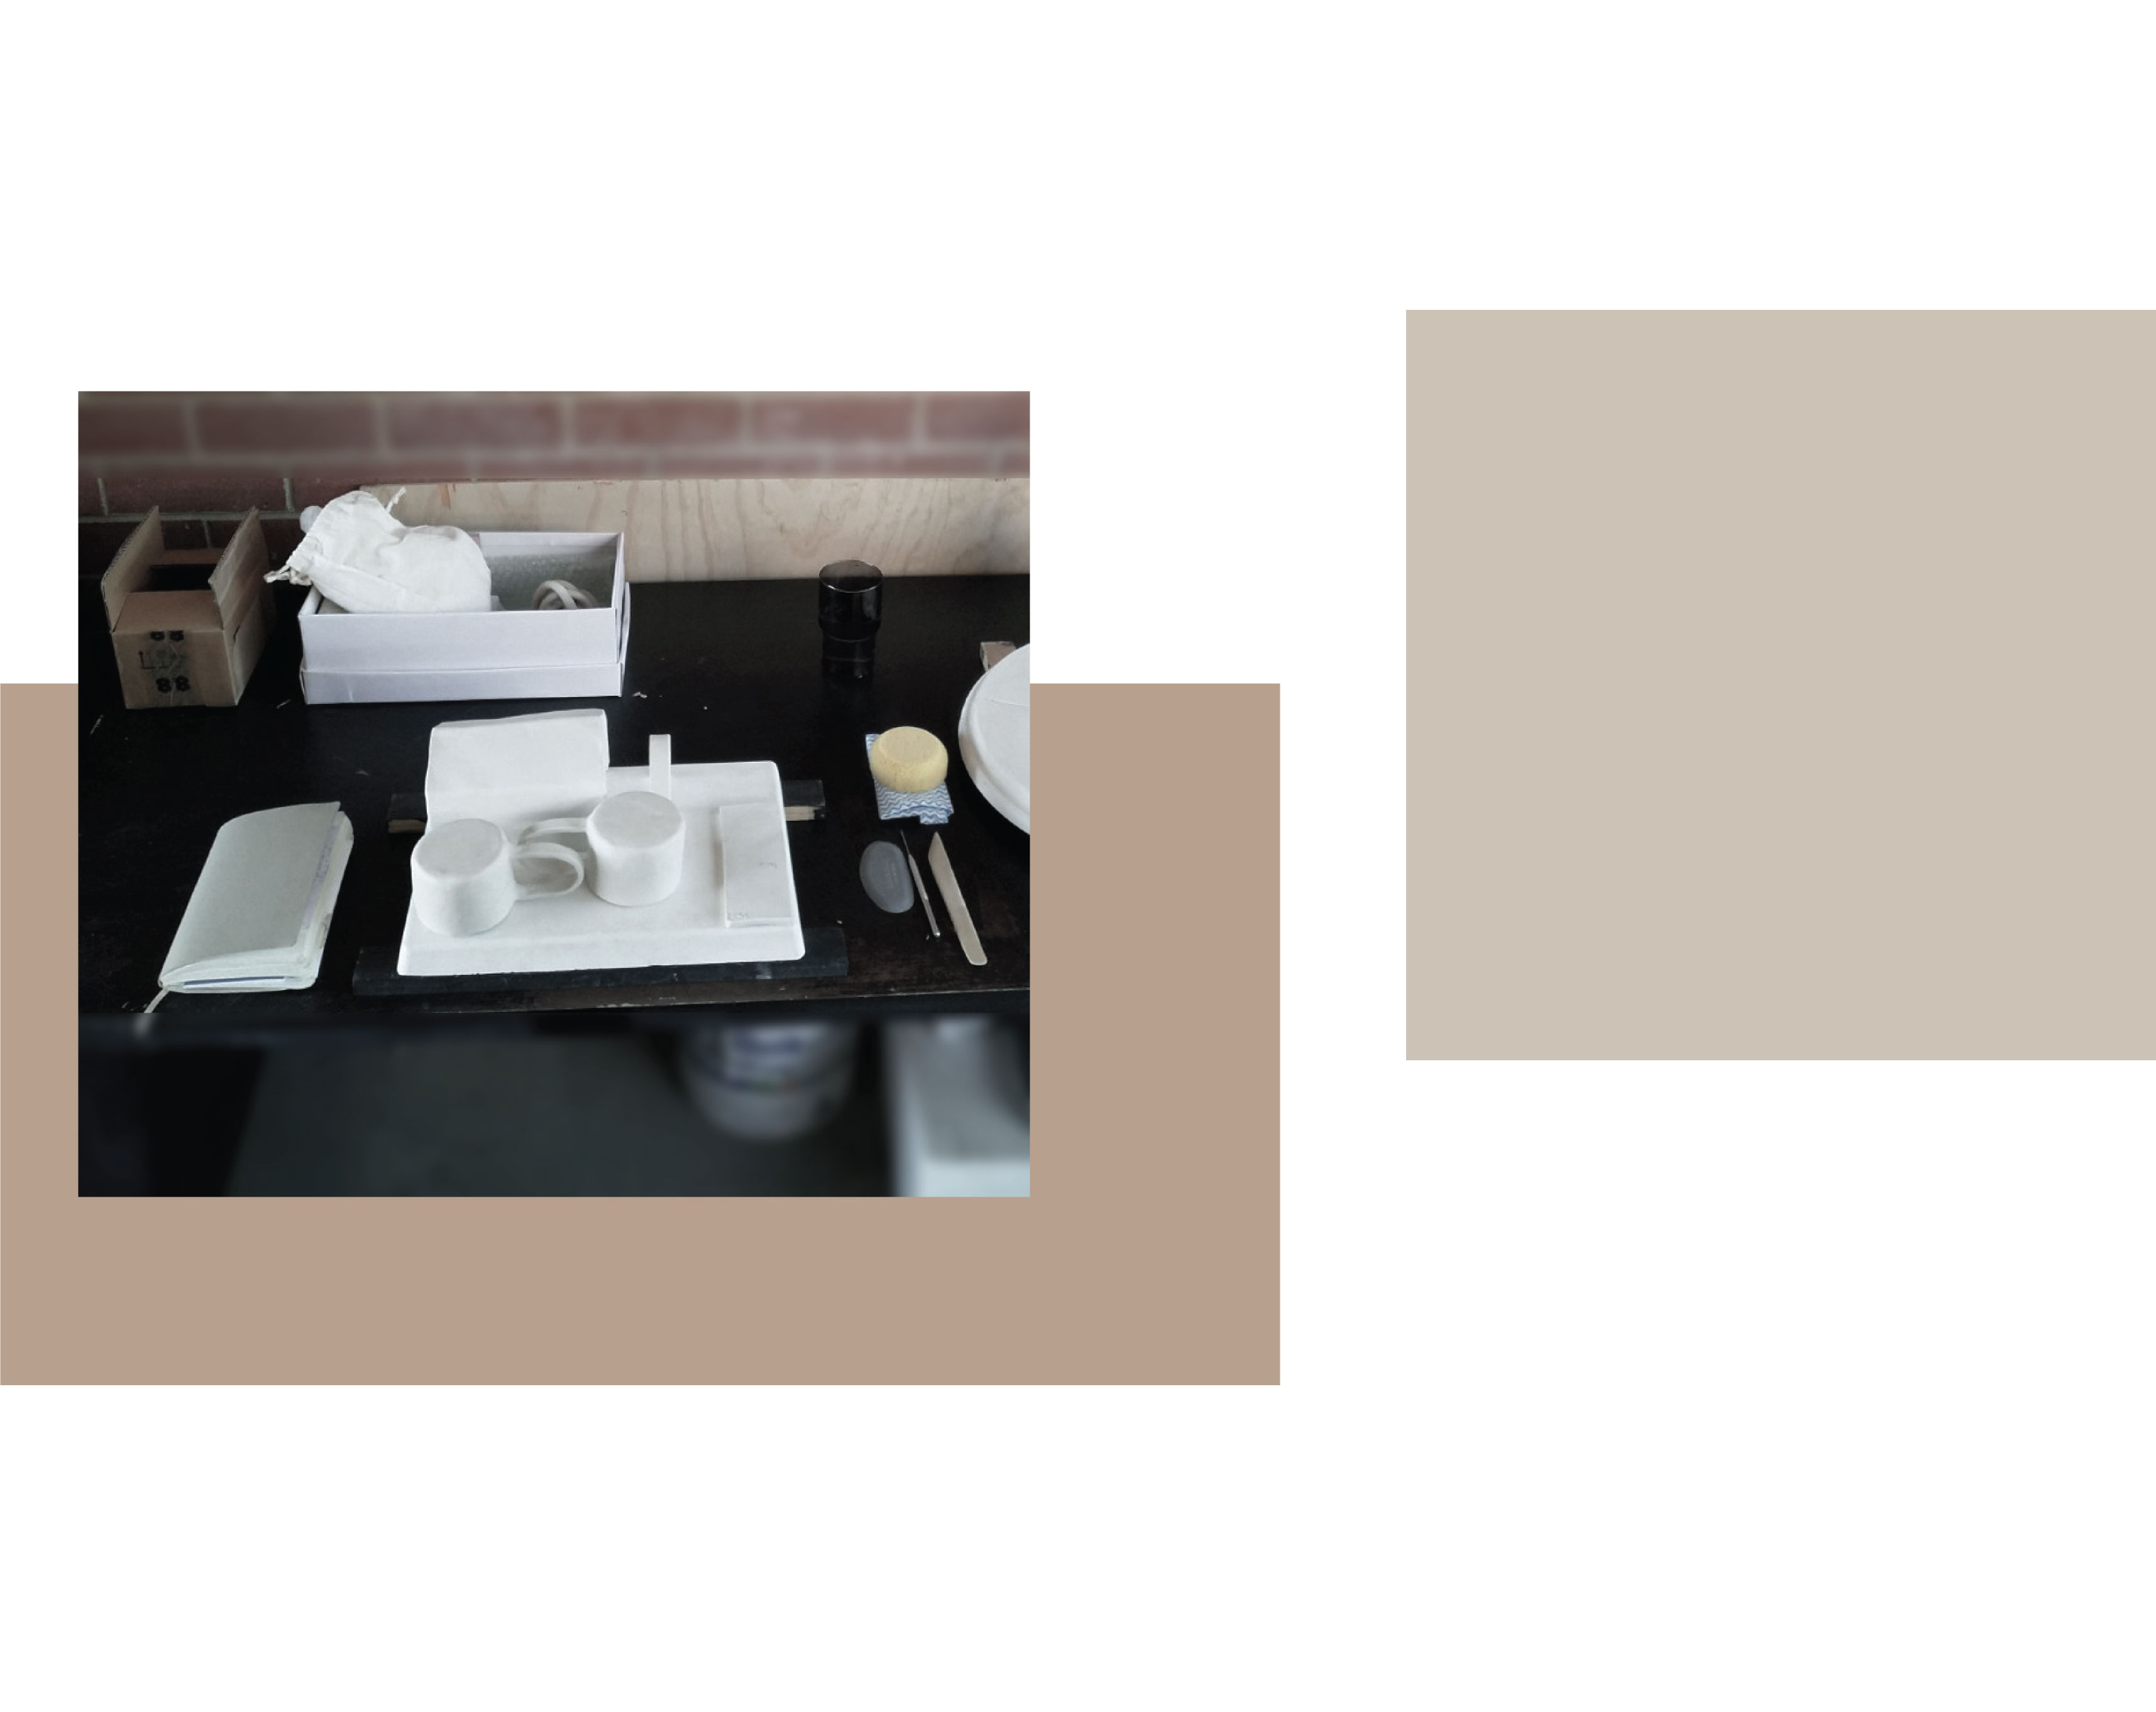 escritorio de estudio con bate de yeso, cuaderno de bocetos, dos tazas de arcilla seca.